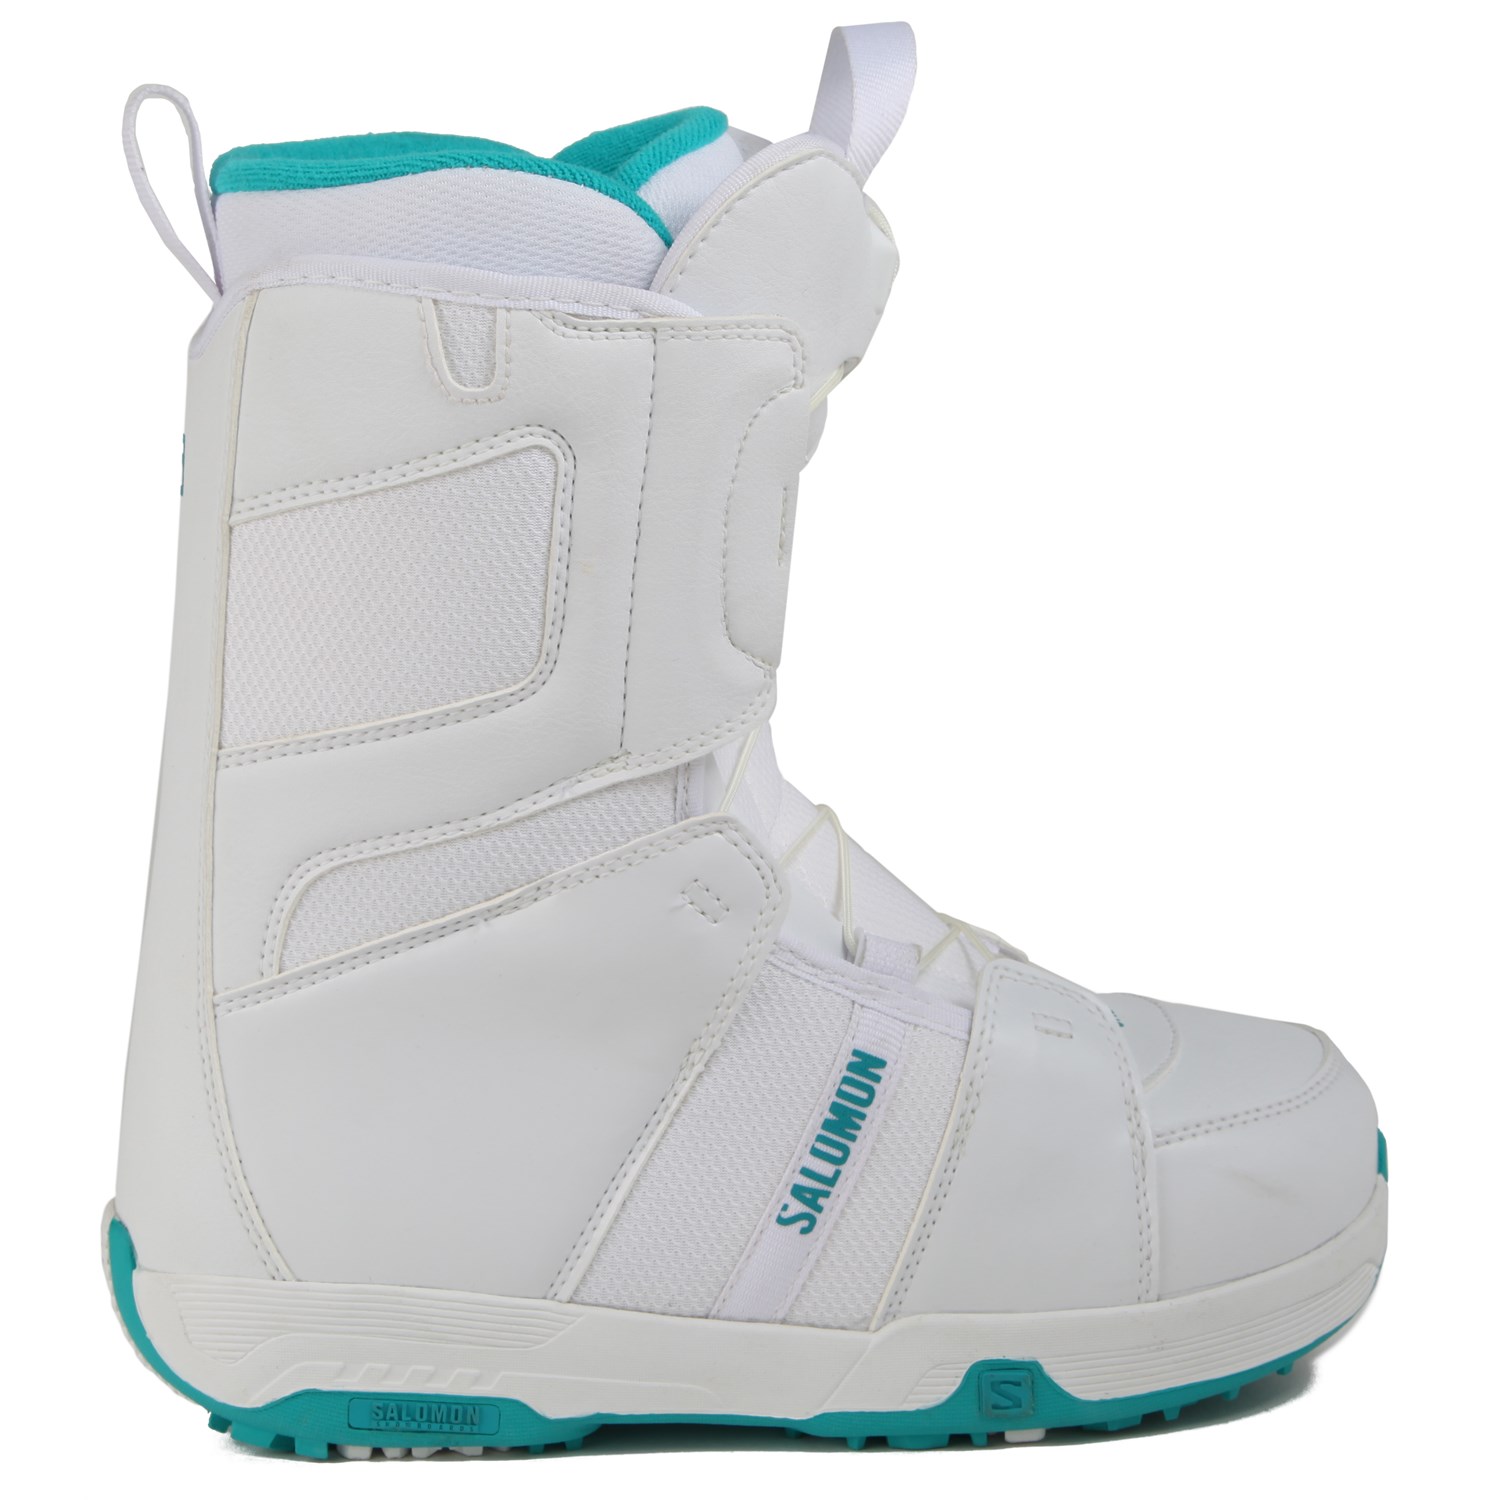 Salomon Linea Snowboard Boots - Demo 